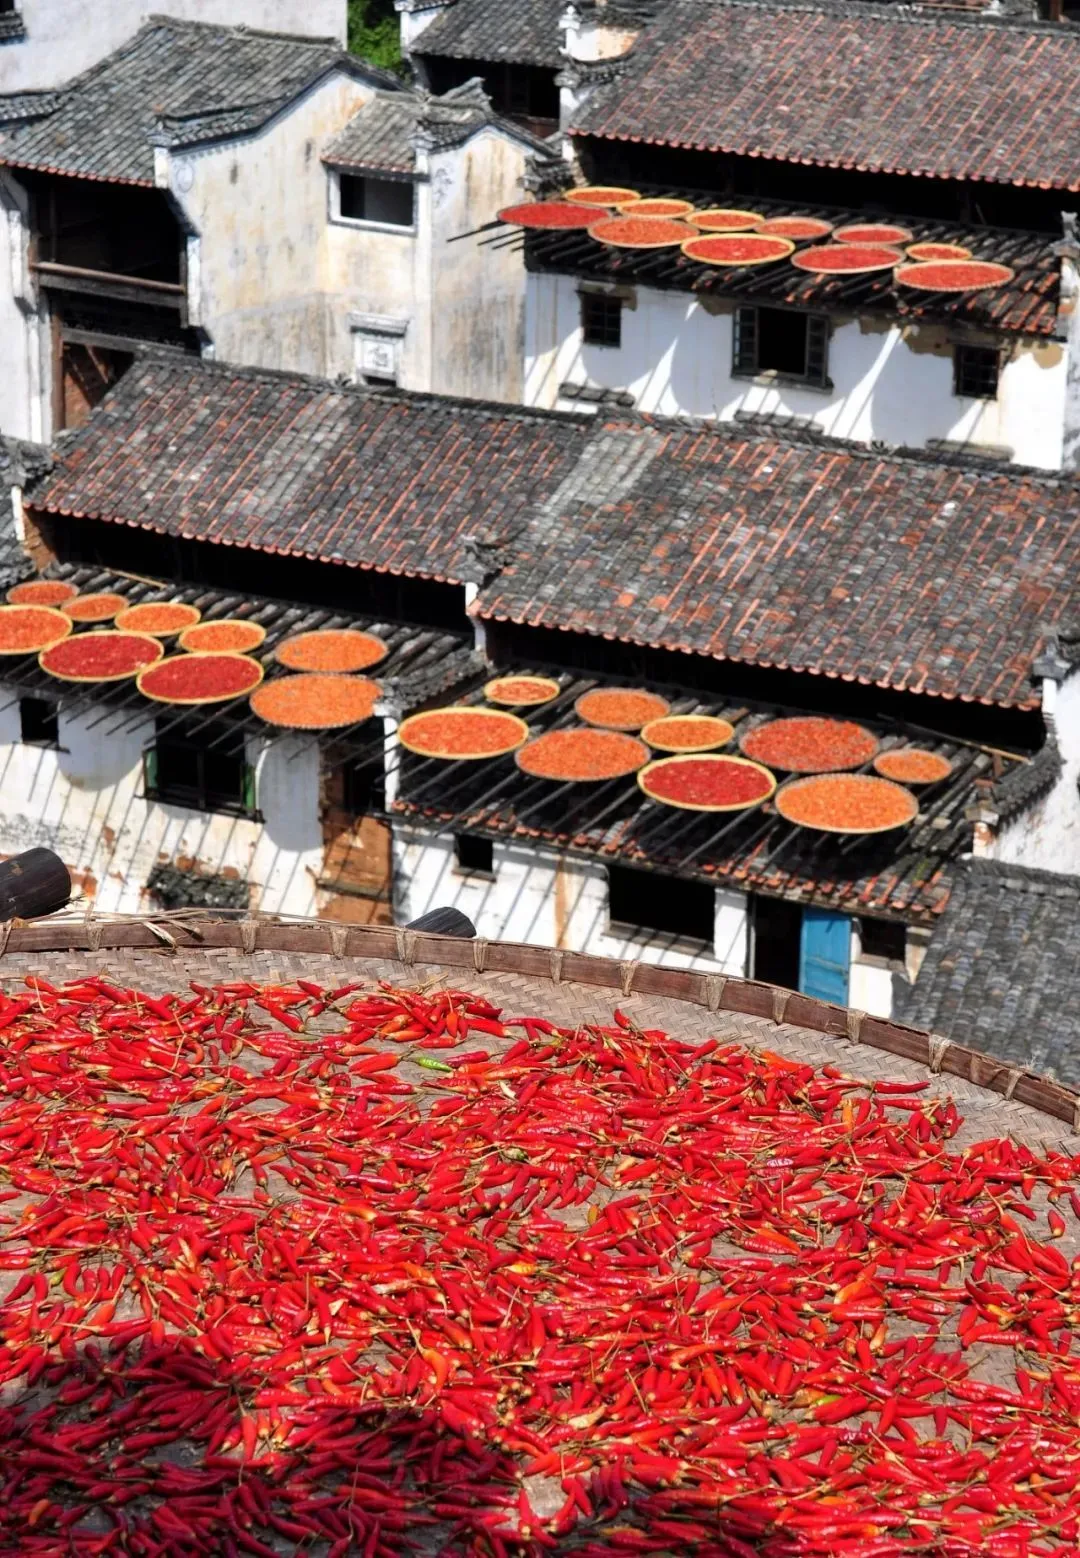 江西婺源，每年秋天家家户户都会晒辣椒。 图/视觉中国